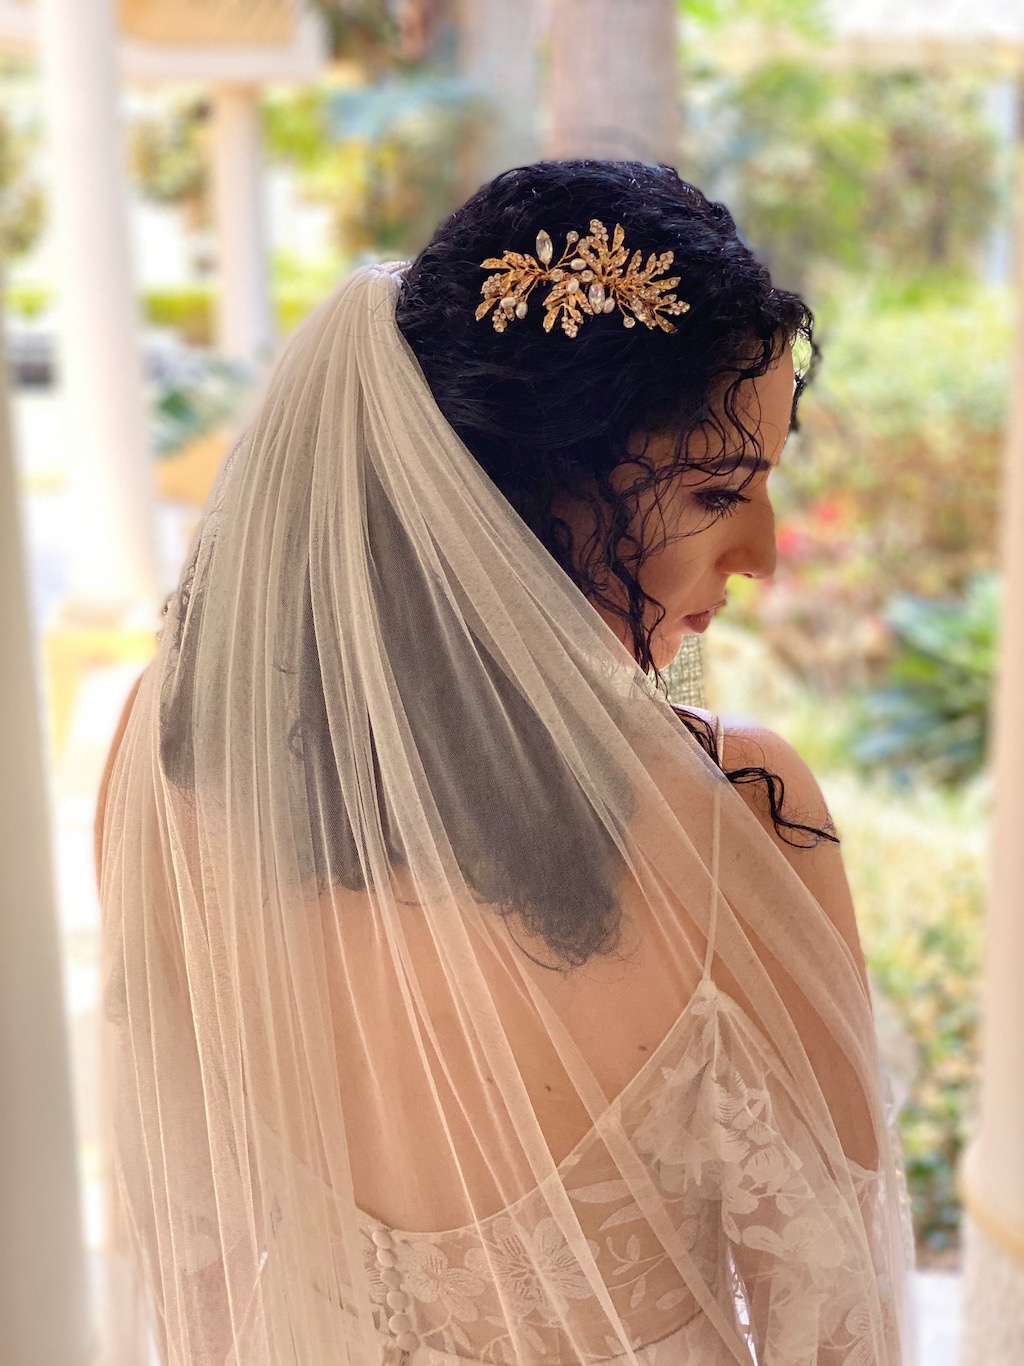 https://weddingveils.com.au/wp-content/uploads/2015/04/IMG_2453.jpeg